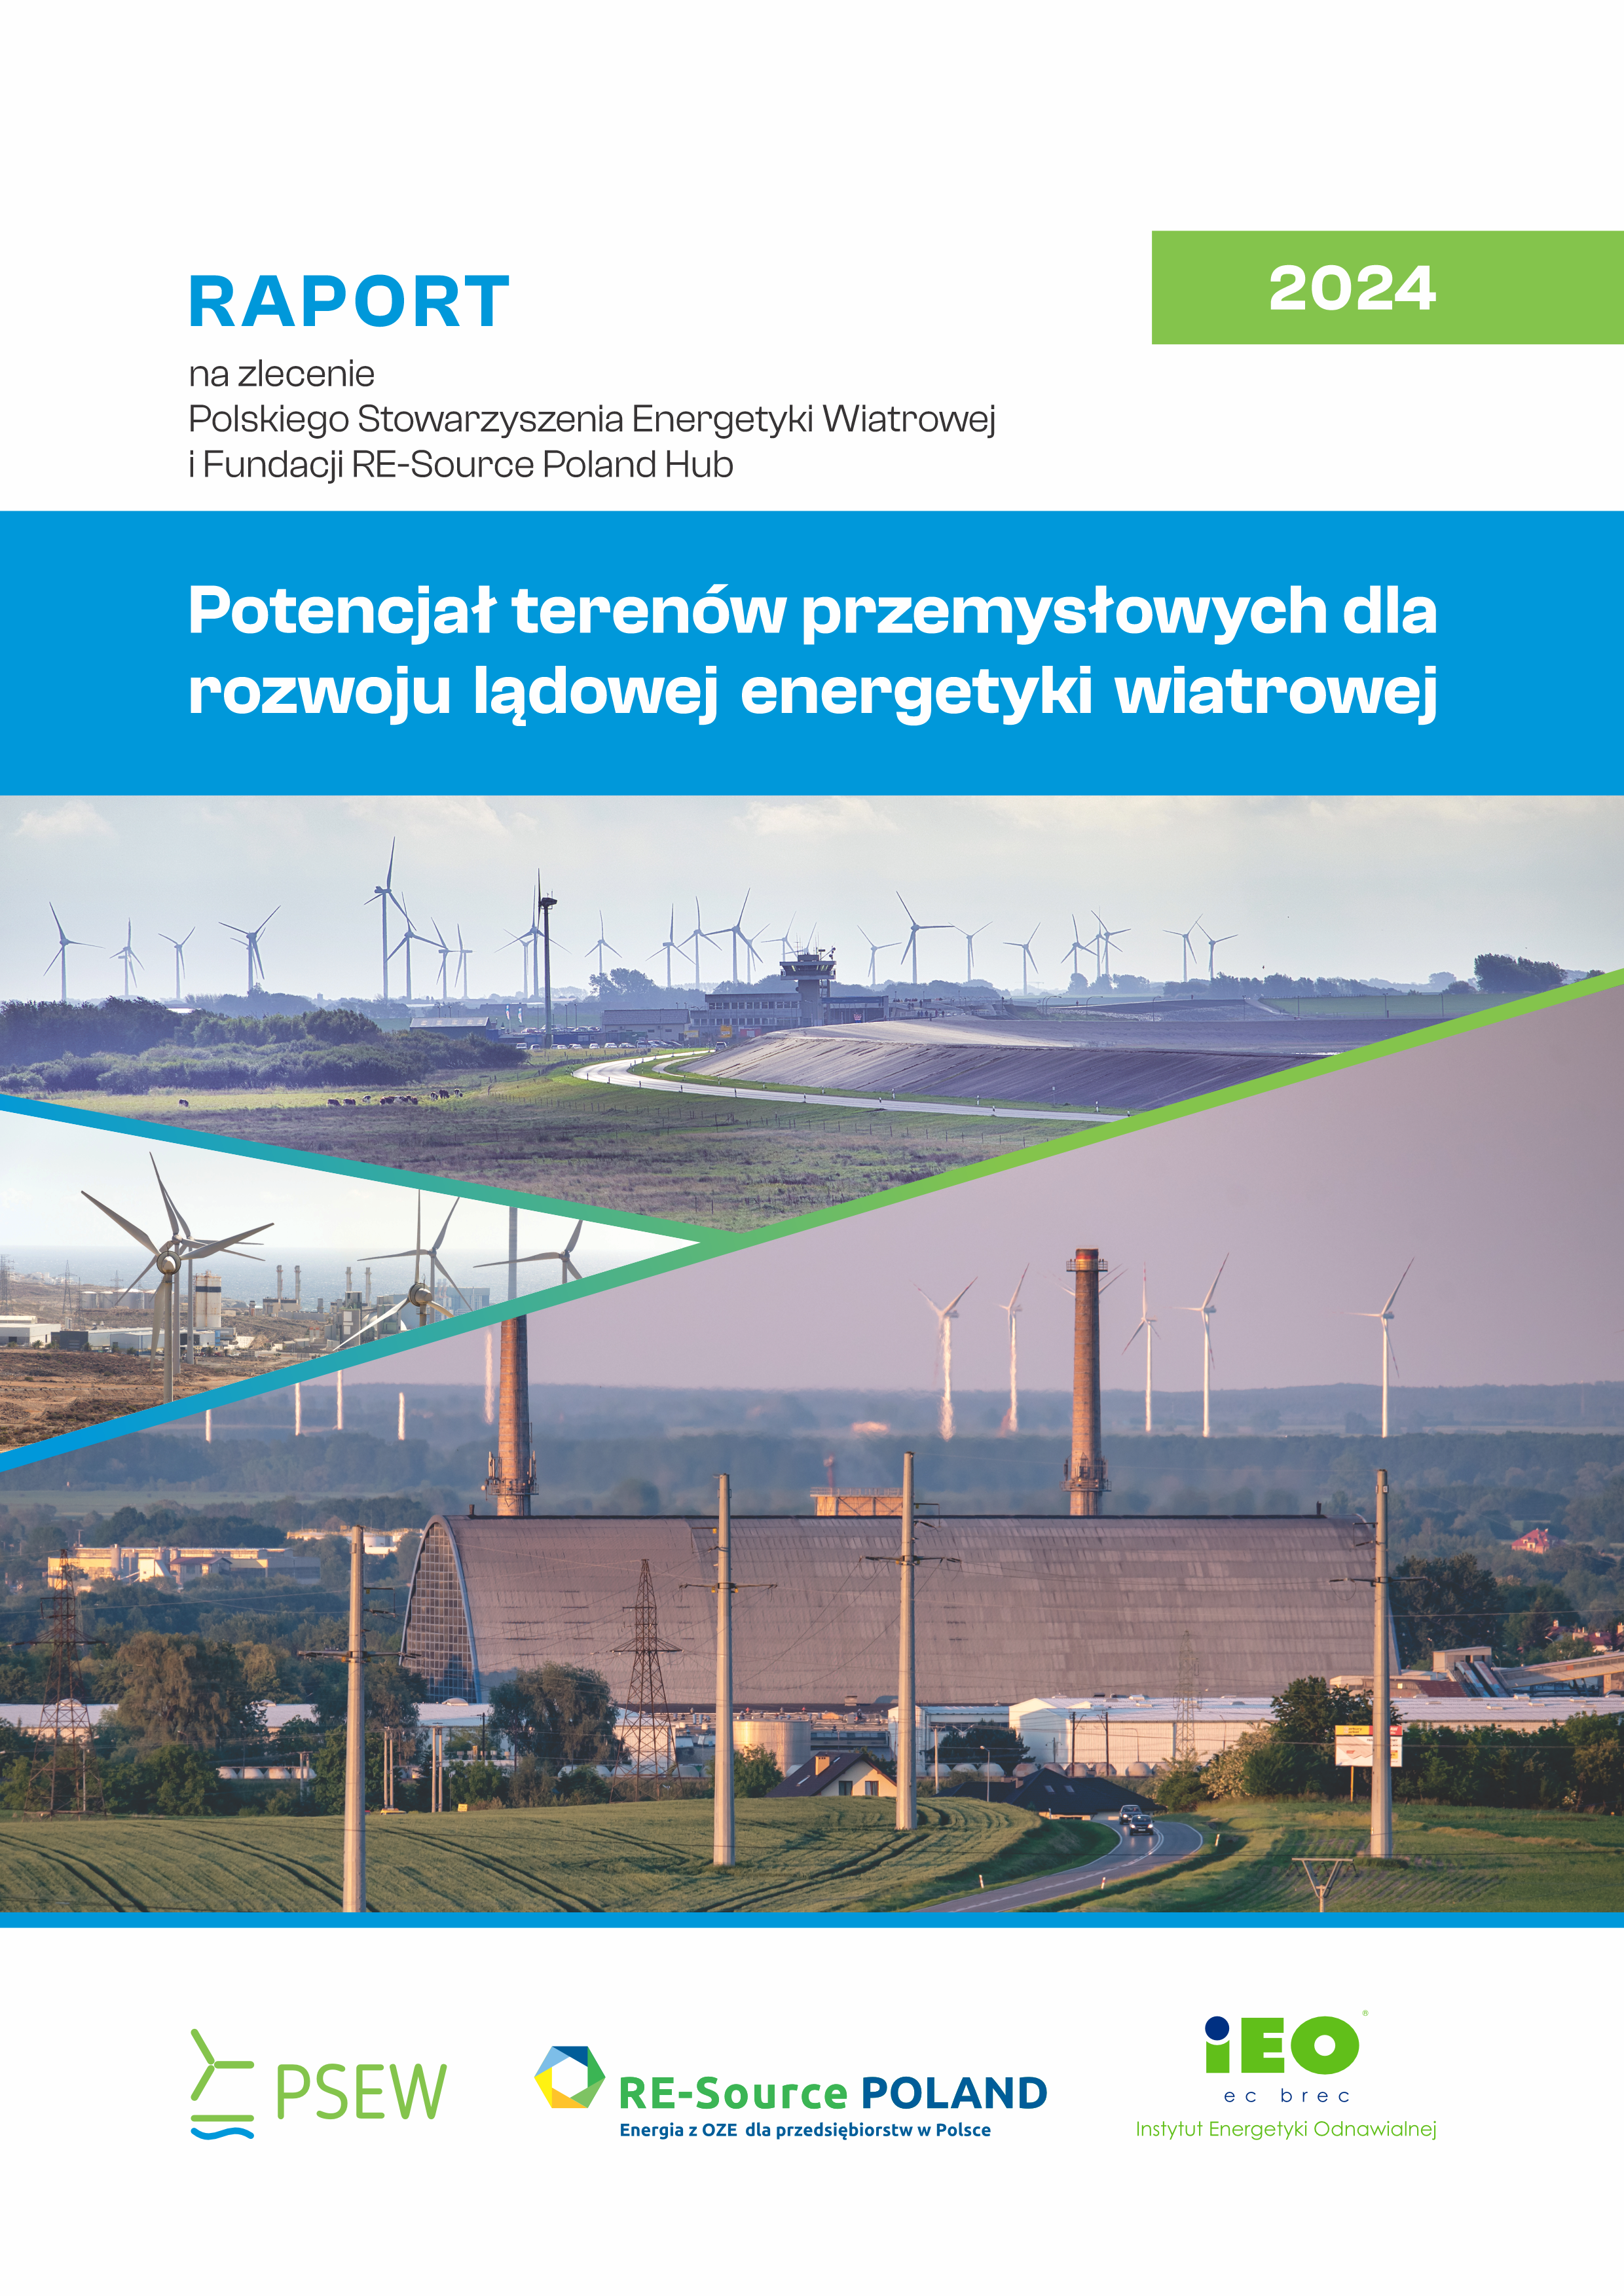 Potencjał terenów przemysłowych dla rozwoju lądowej energetyki wiatrowej